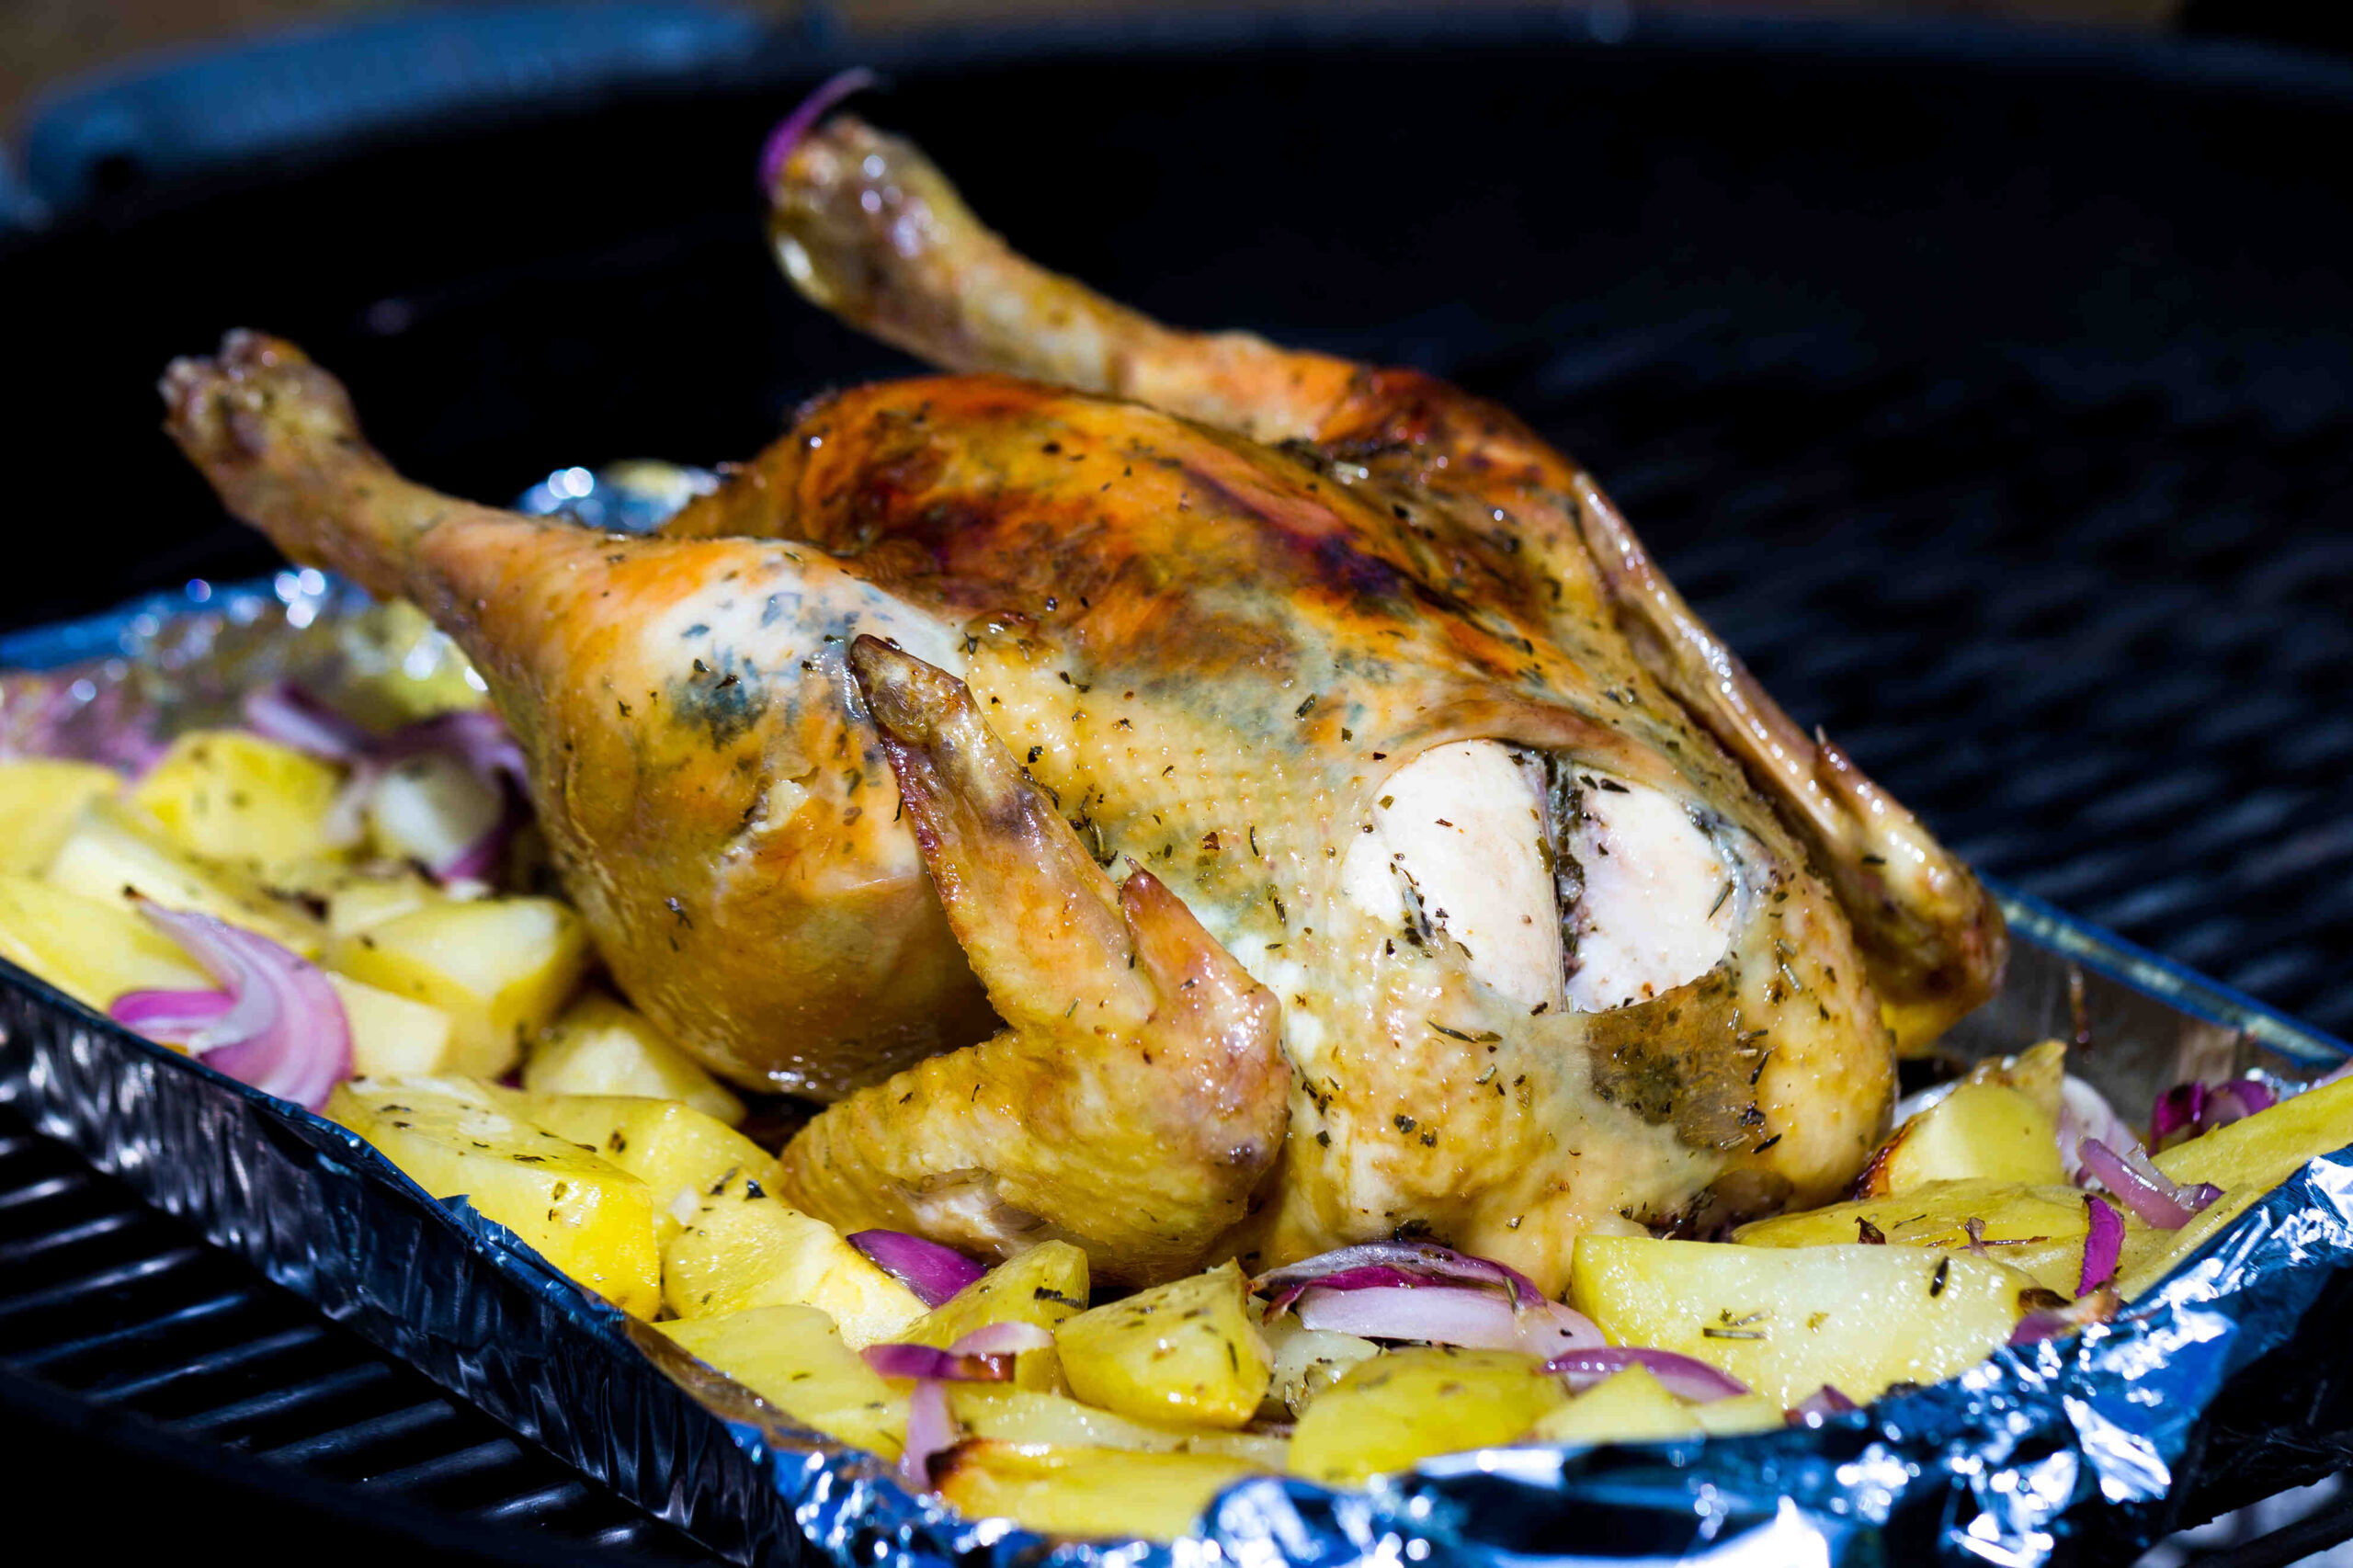 Comment faire cuire un poulet au barbecue weber